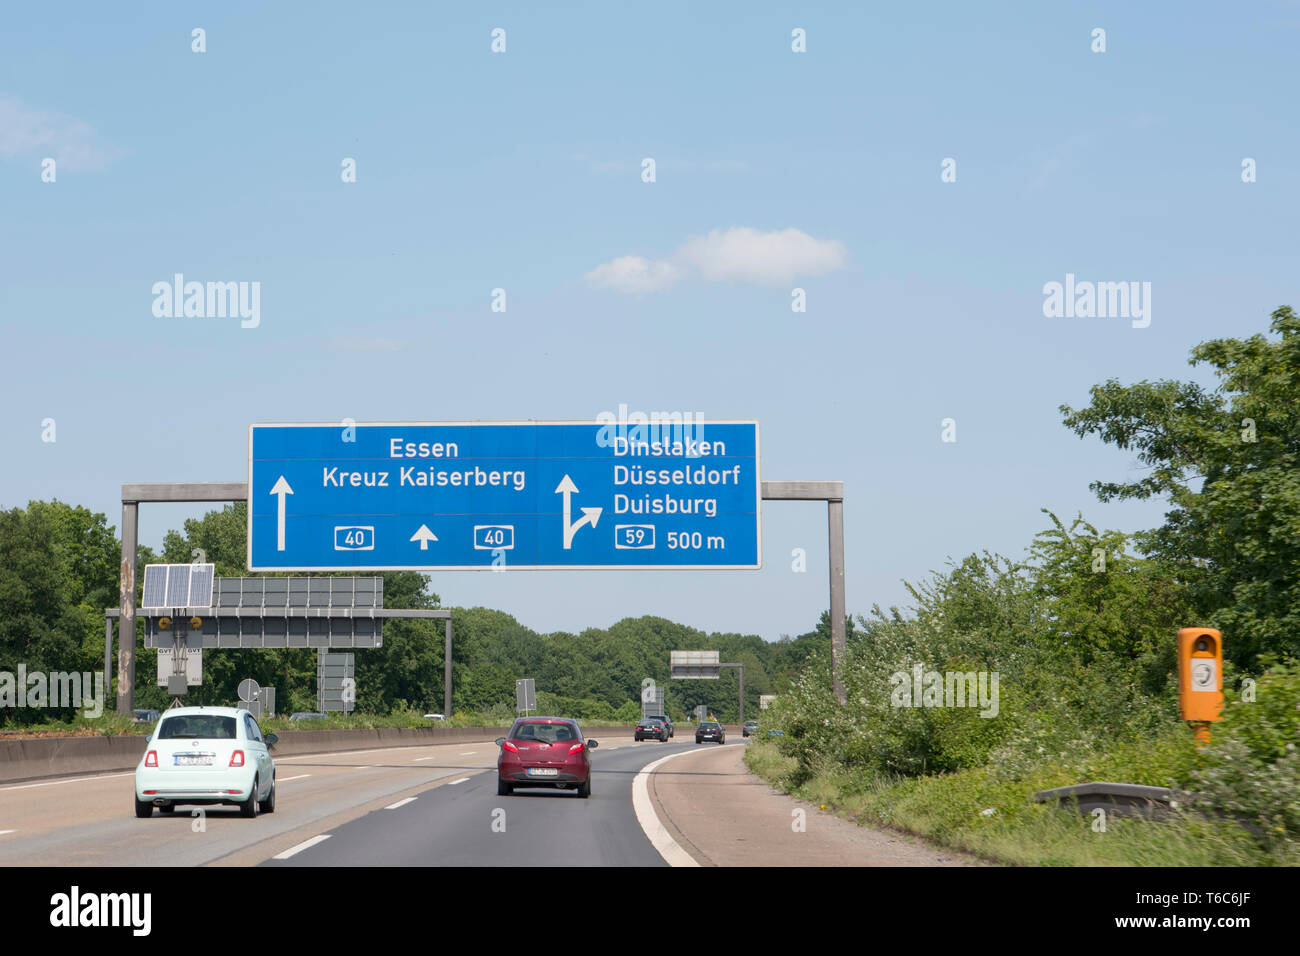 Deutschland, Nordrhein-Westfalen, Duisburg, A40 / A59, Autobahnkreuz Duisburg Stock Photo